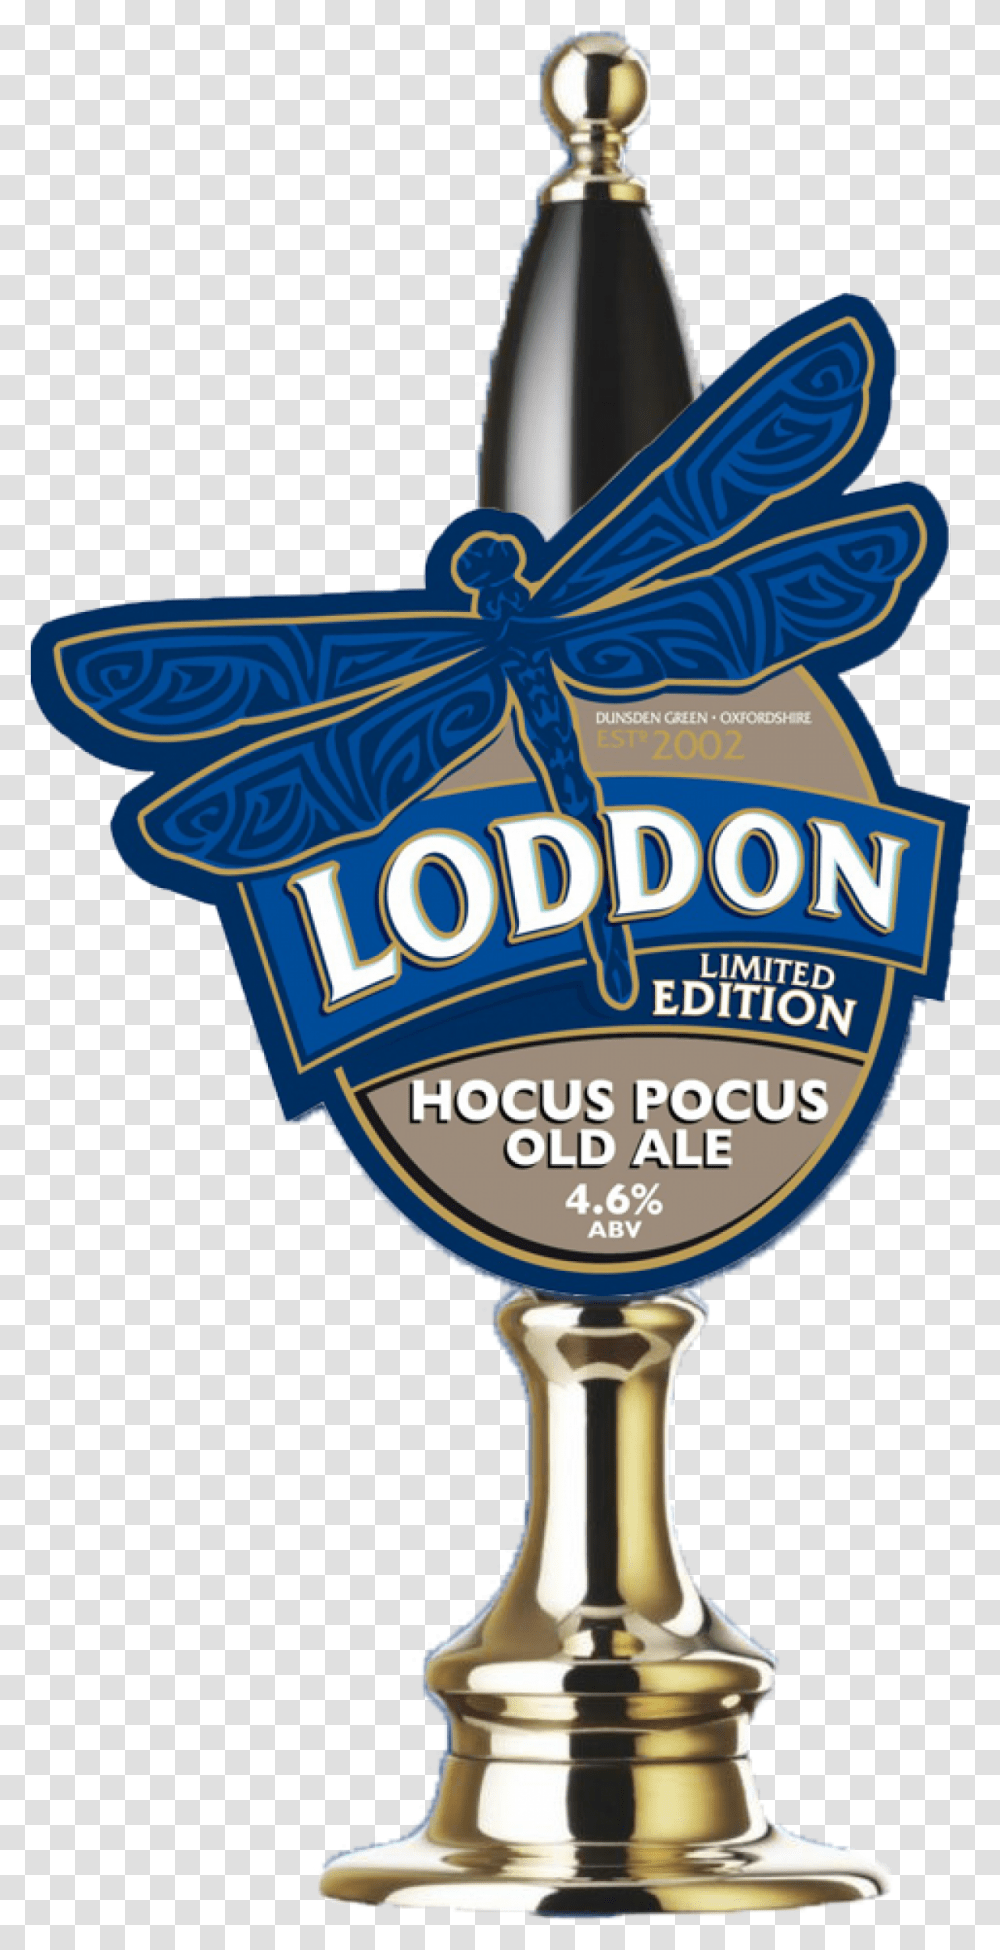 Northern Lights Orkney Brewery Loddon Hocus Pocus, Logo, Symbol, Trademark, Lamp Transparent Png